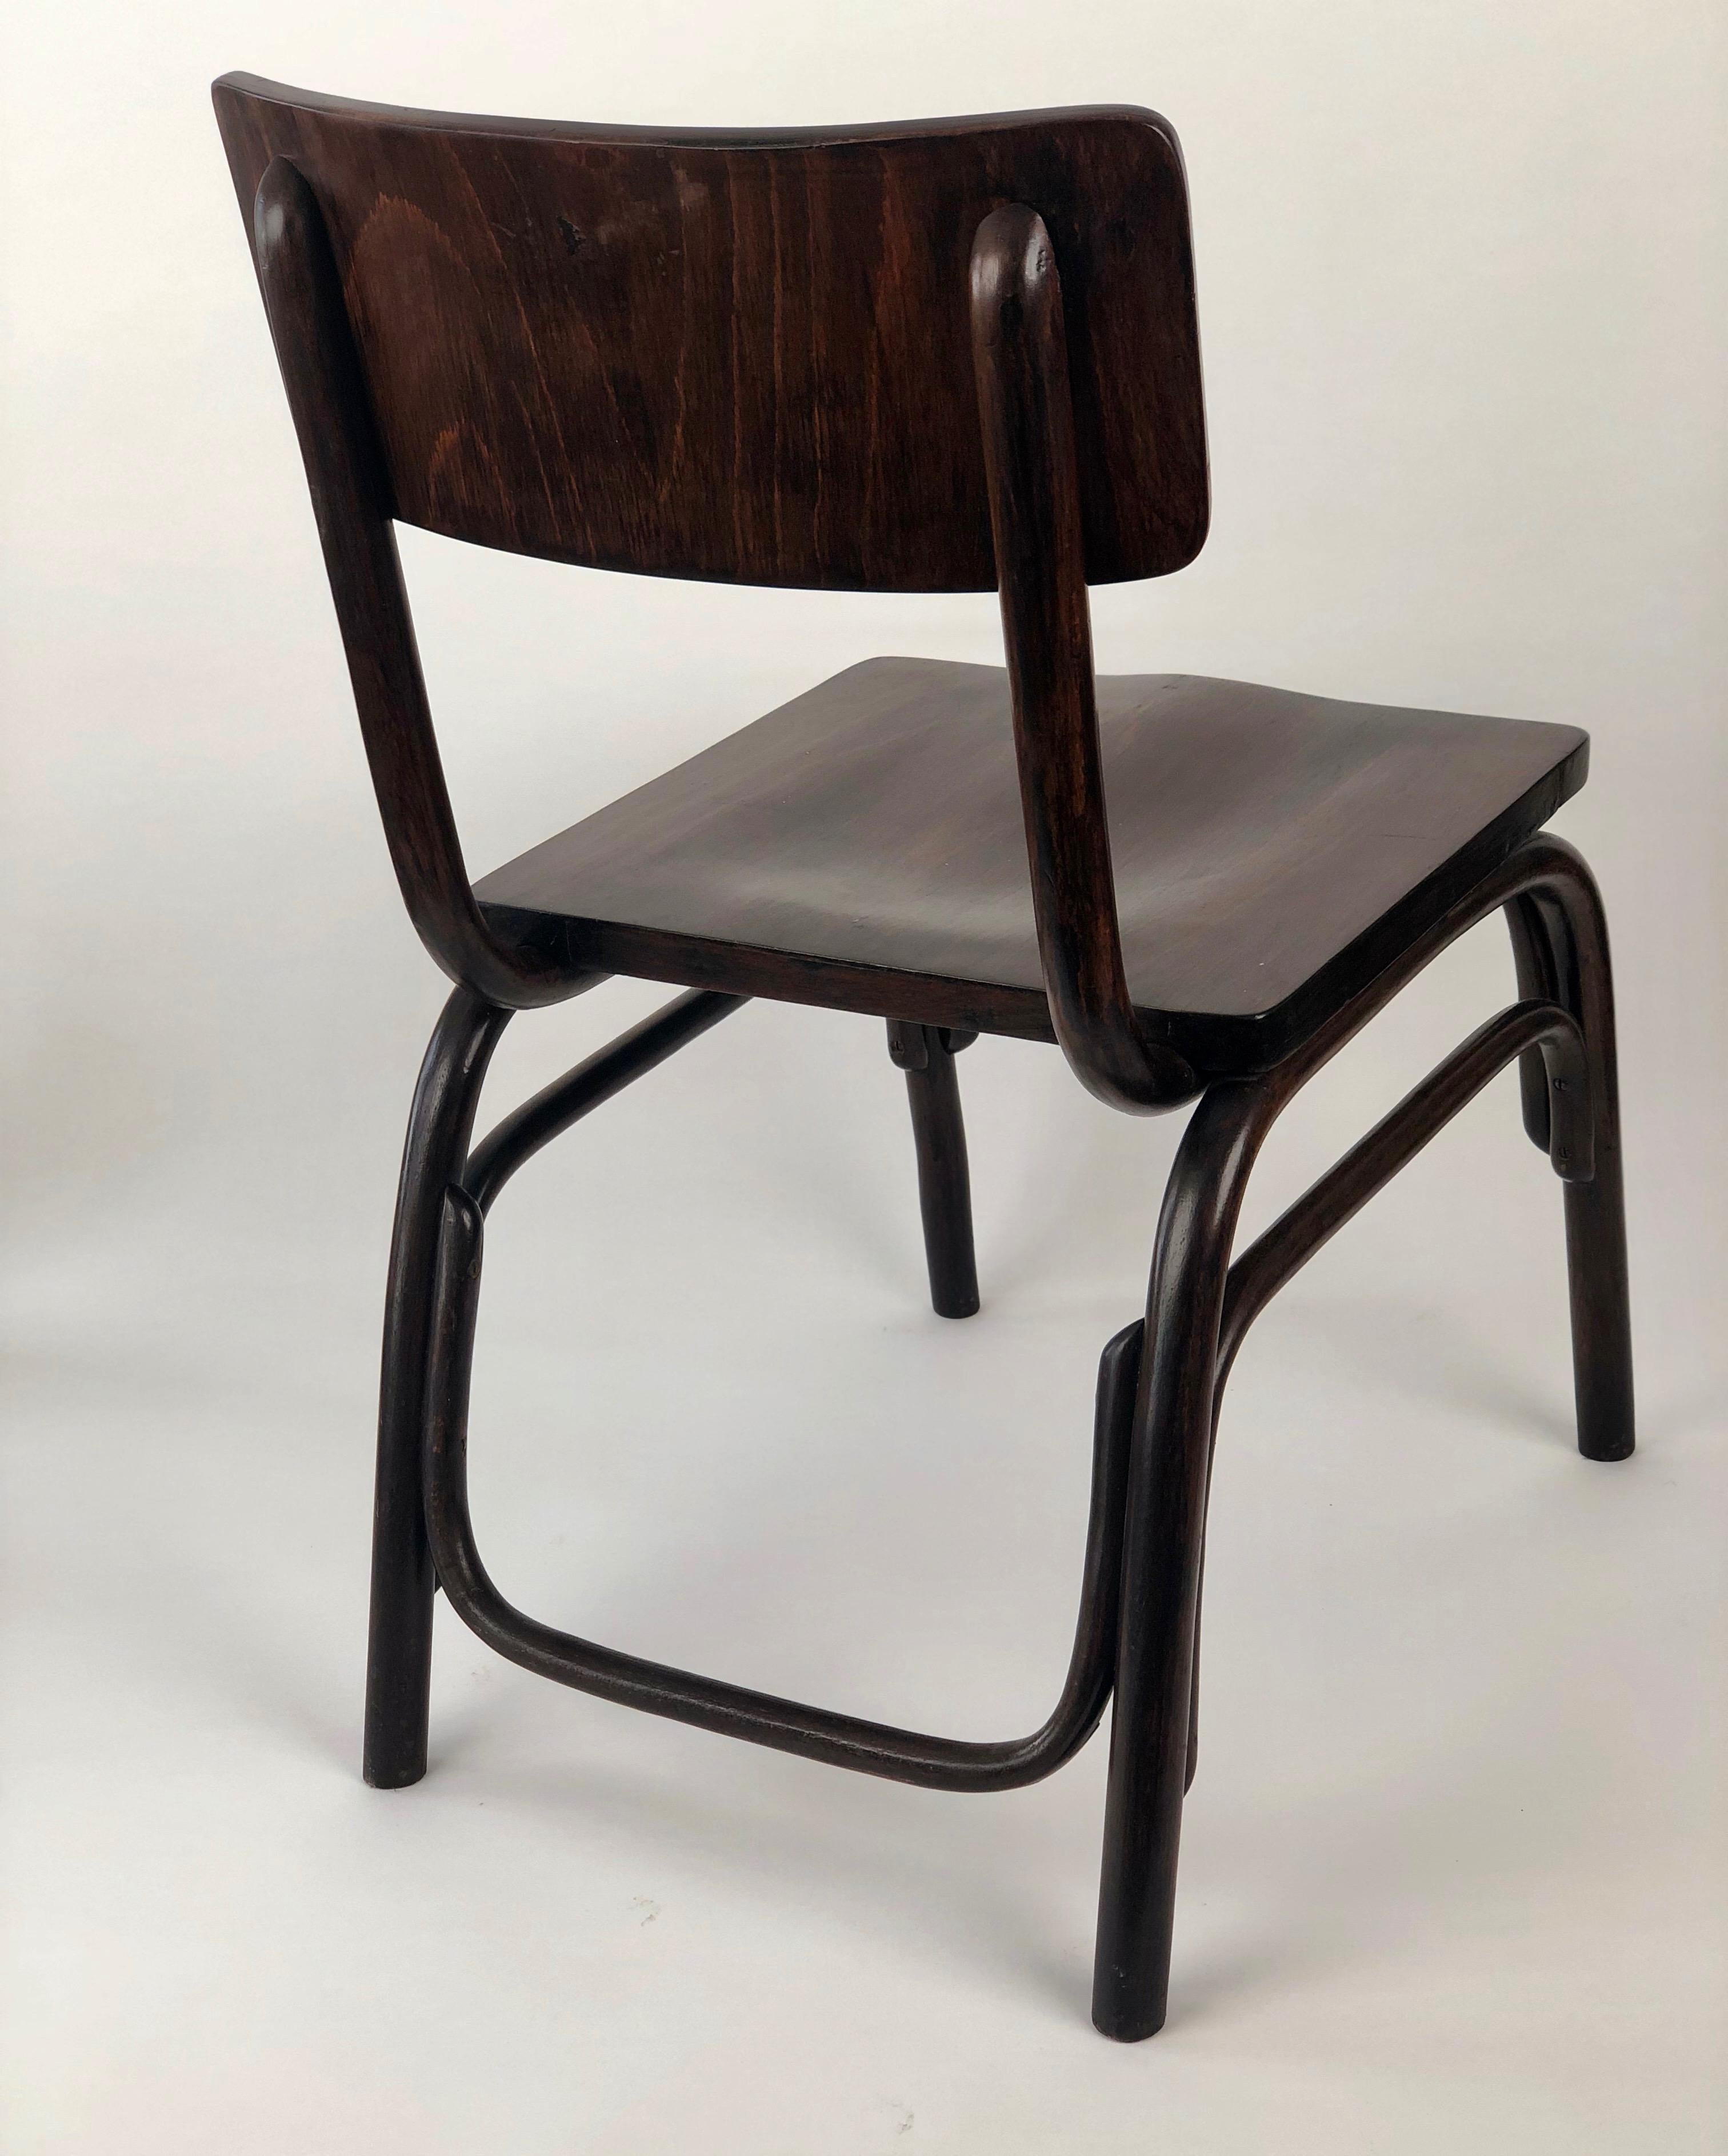 L'architecte et designer Ferdinand Kramer a conçu la chaise B403 pour Thonet en 1927. 
Développé lors de la construction de la Nouvelle Francfort, il a d'abord été utilisé dans l'enseignement professionnel.
Contrairement aux chaises de bureau et